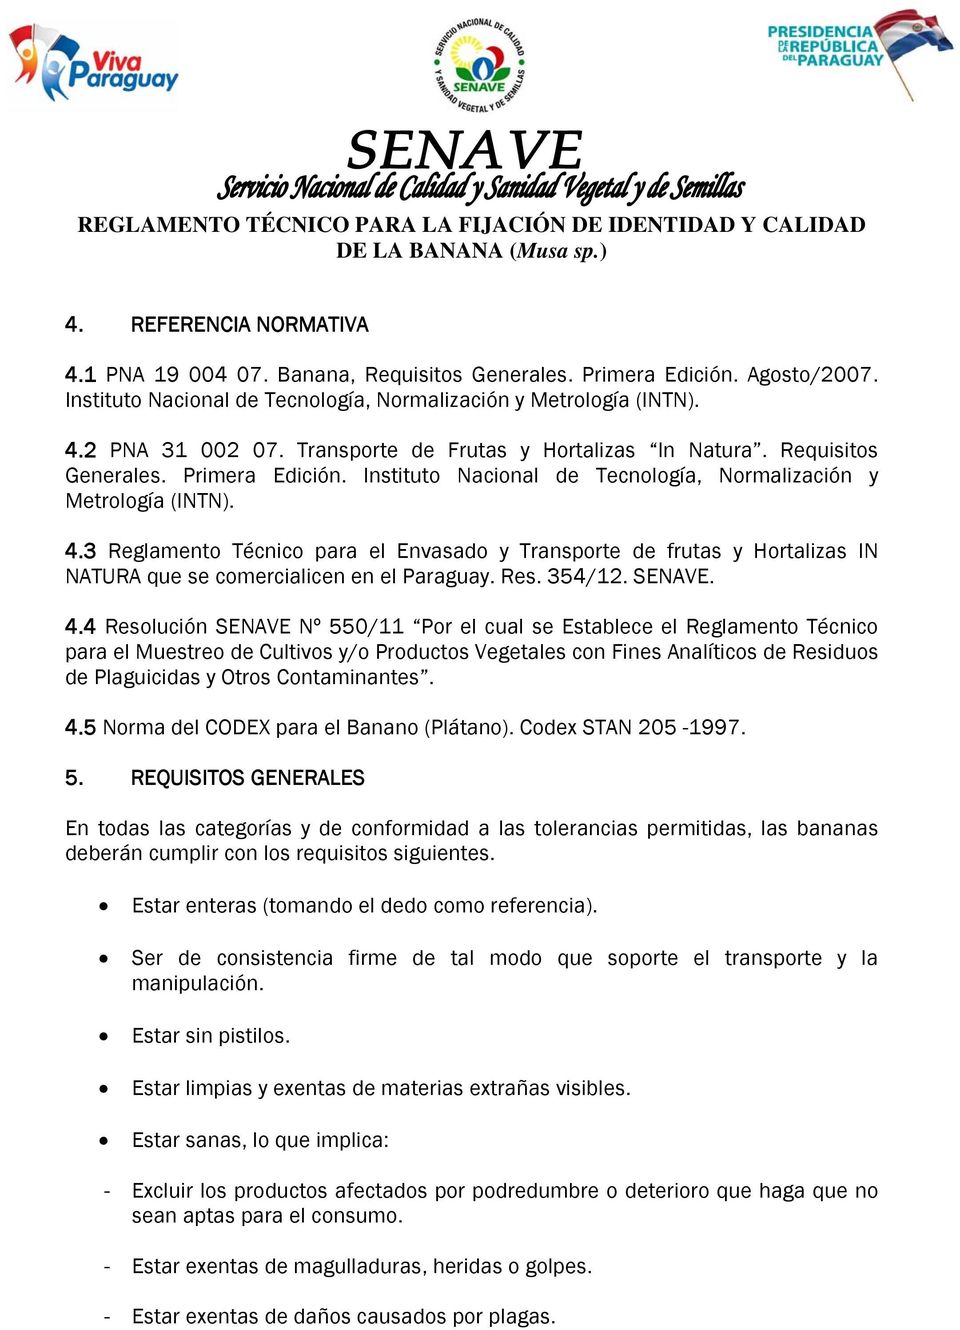 3 Reglamento Técnico para el Envasado y Transporte de frutas y Hortalizas IN NATURA que se comercialicen en el Paraguay. Res. 354/12. SENAVE. 4.